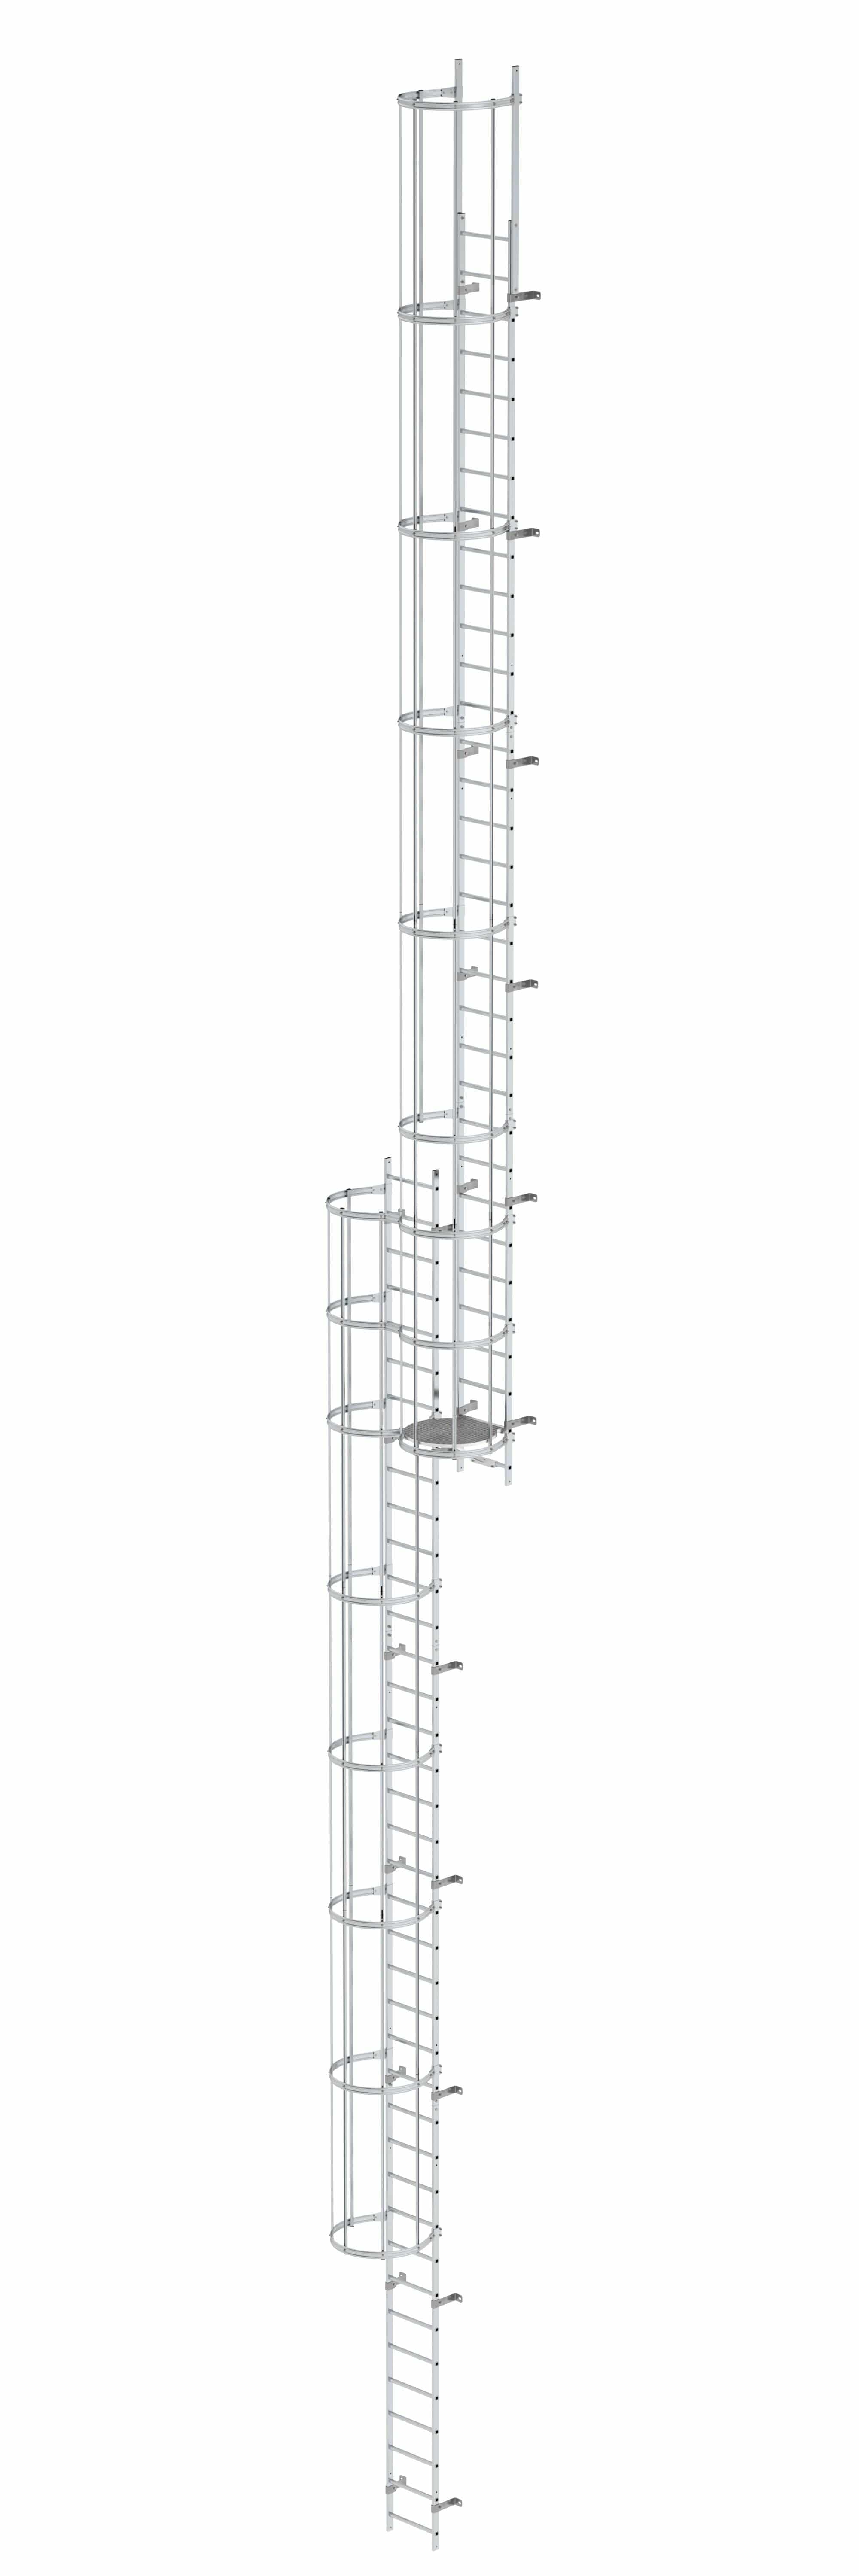 Munk Mehrzügige Steigleiter mit Rückenschutz (Bau) Aluminium blank 19,12m